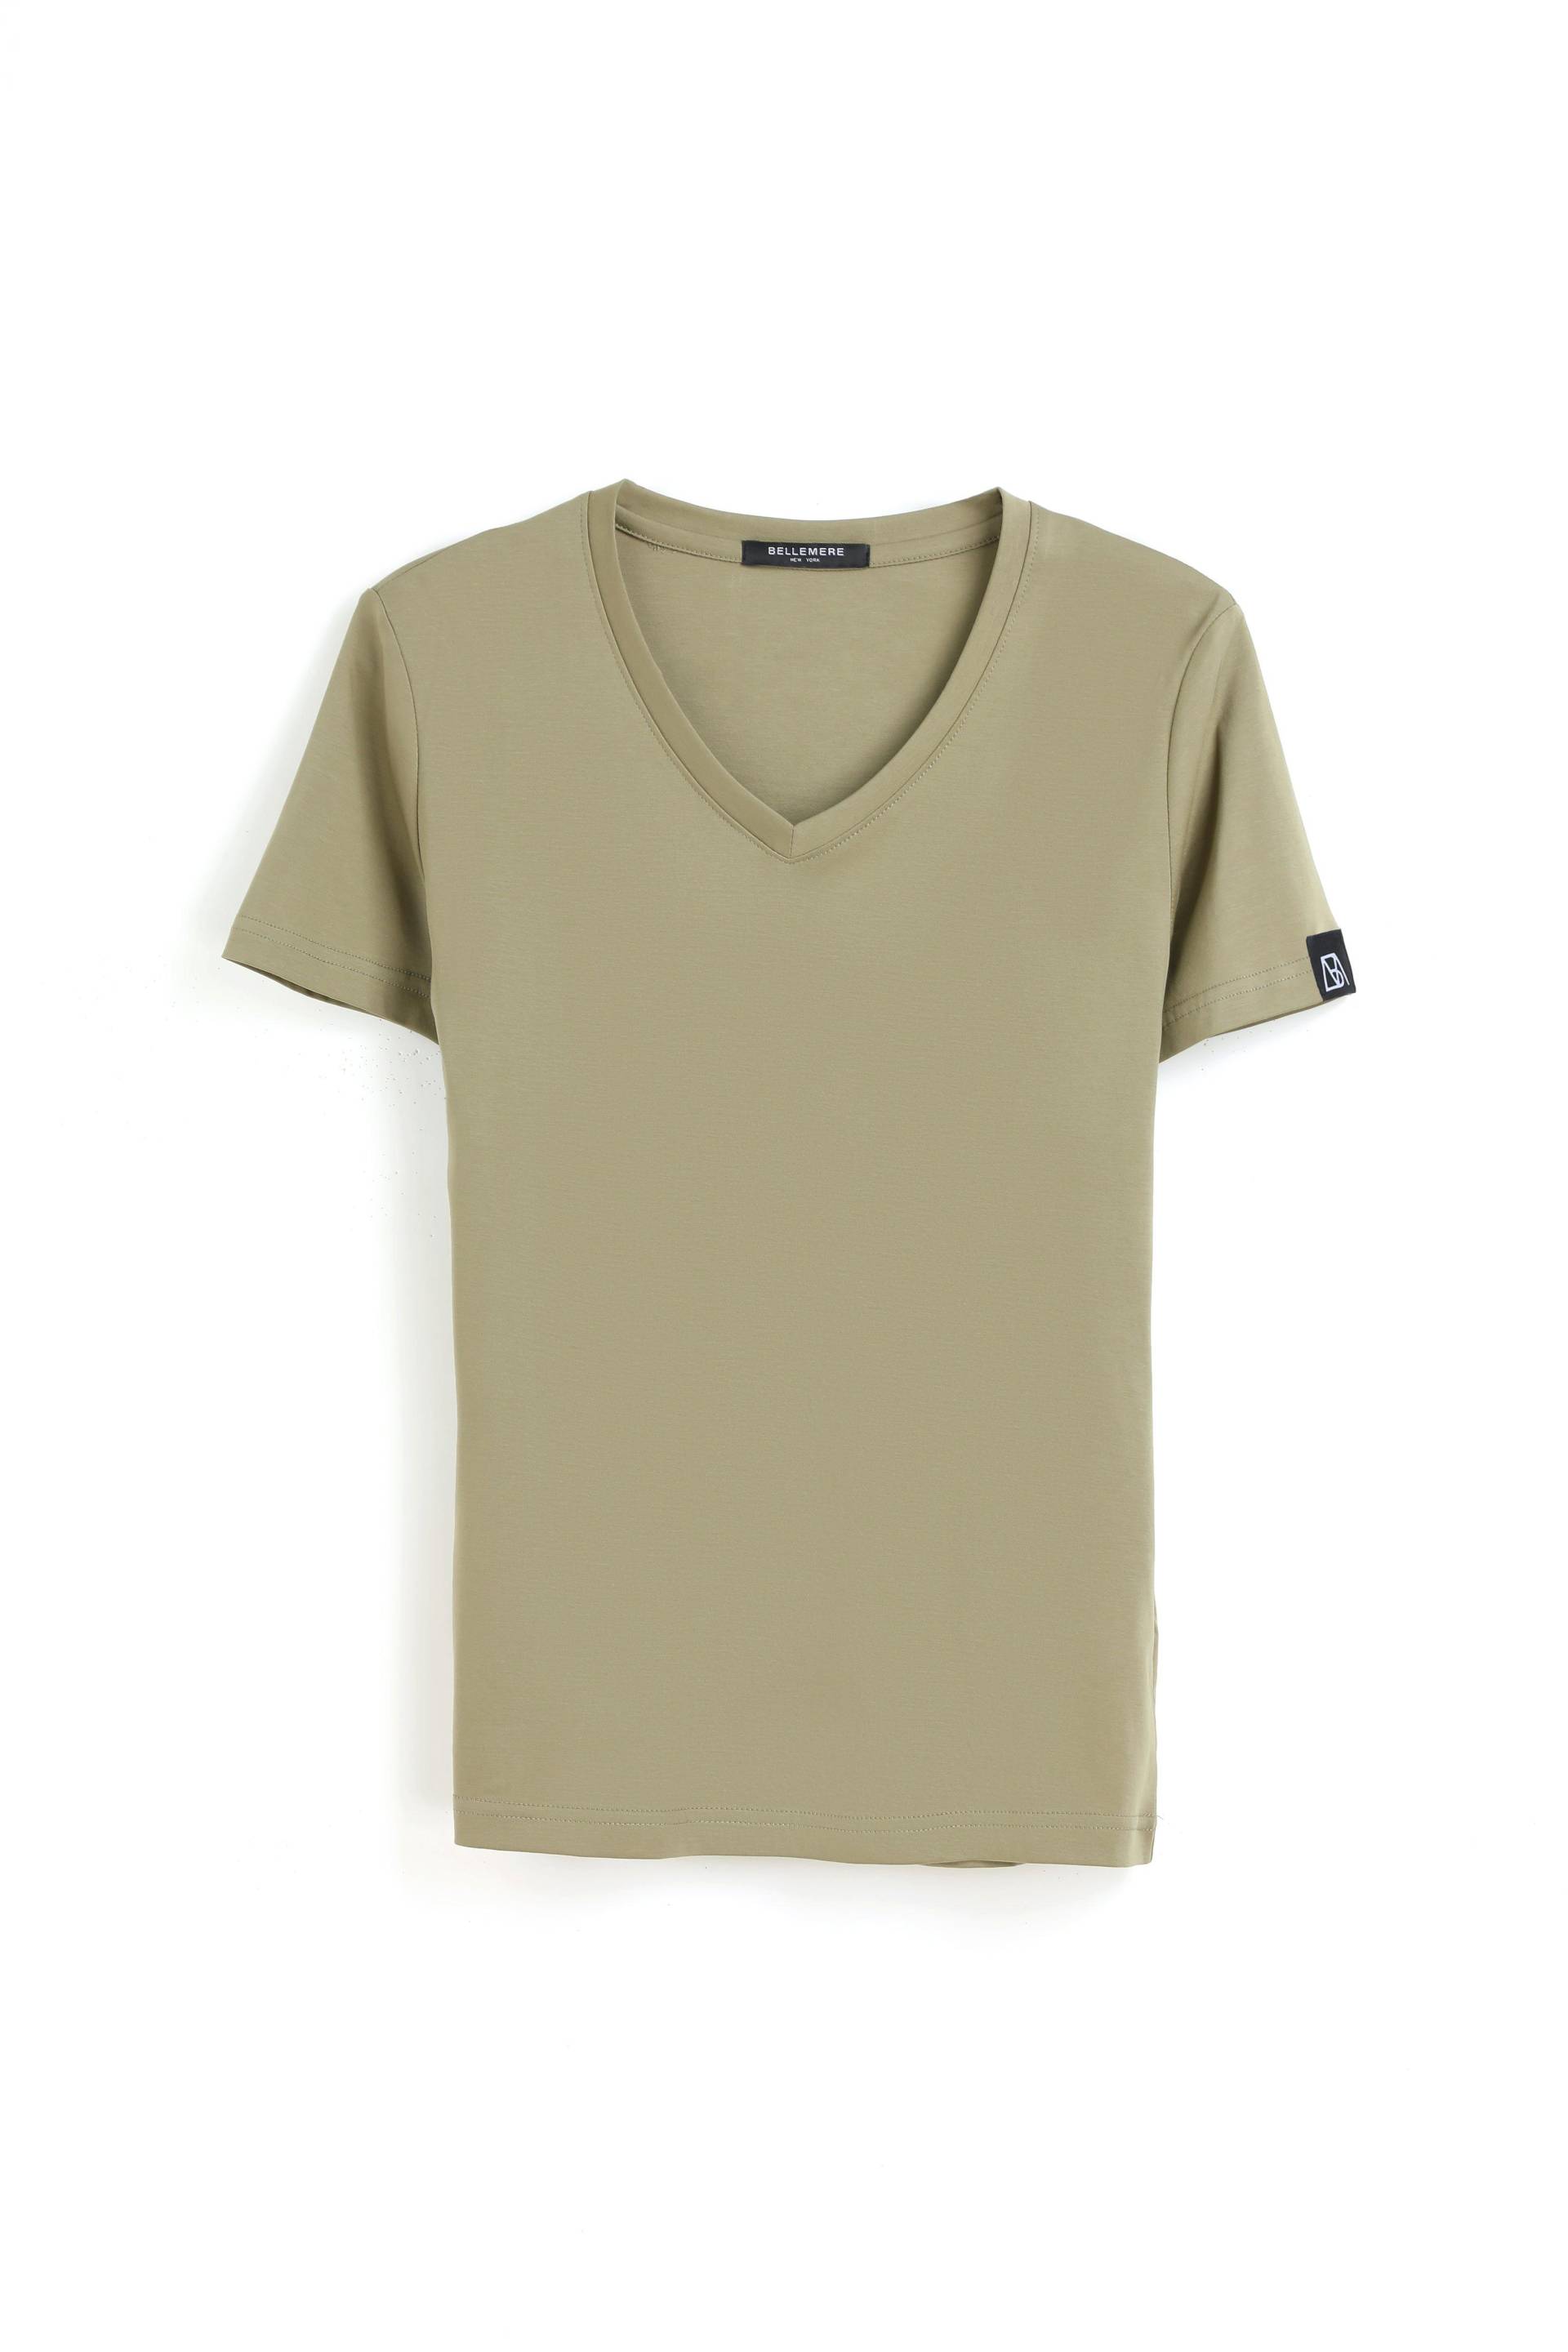 Grand T-shirt Aus Baumwolle Mit V-ausschnitt, 160 G Damen Khaki S von Bellemere New York